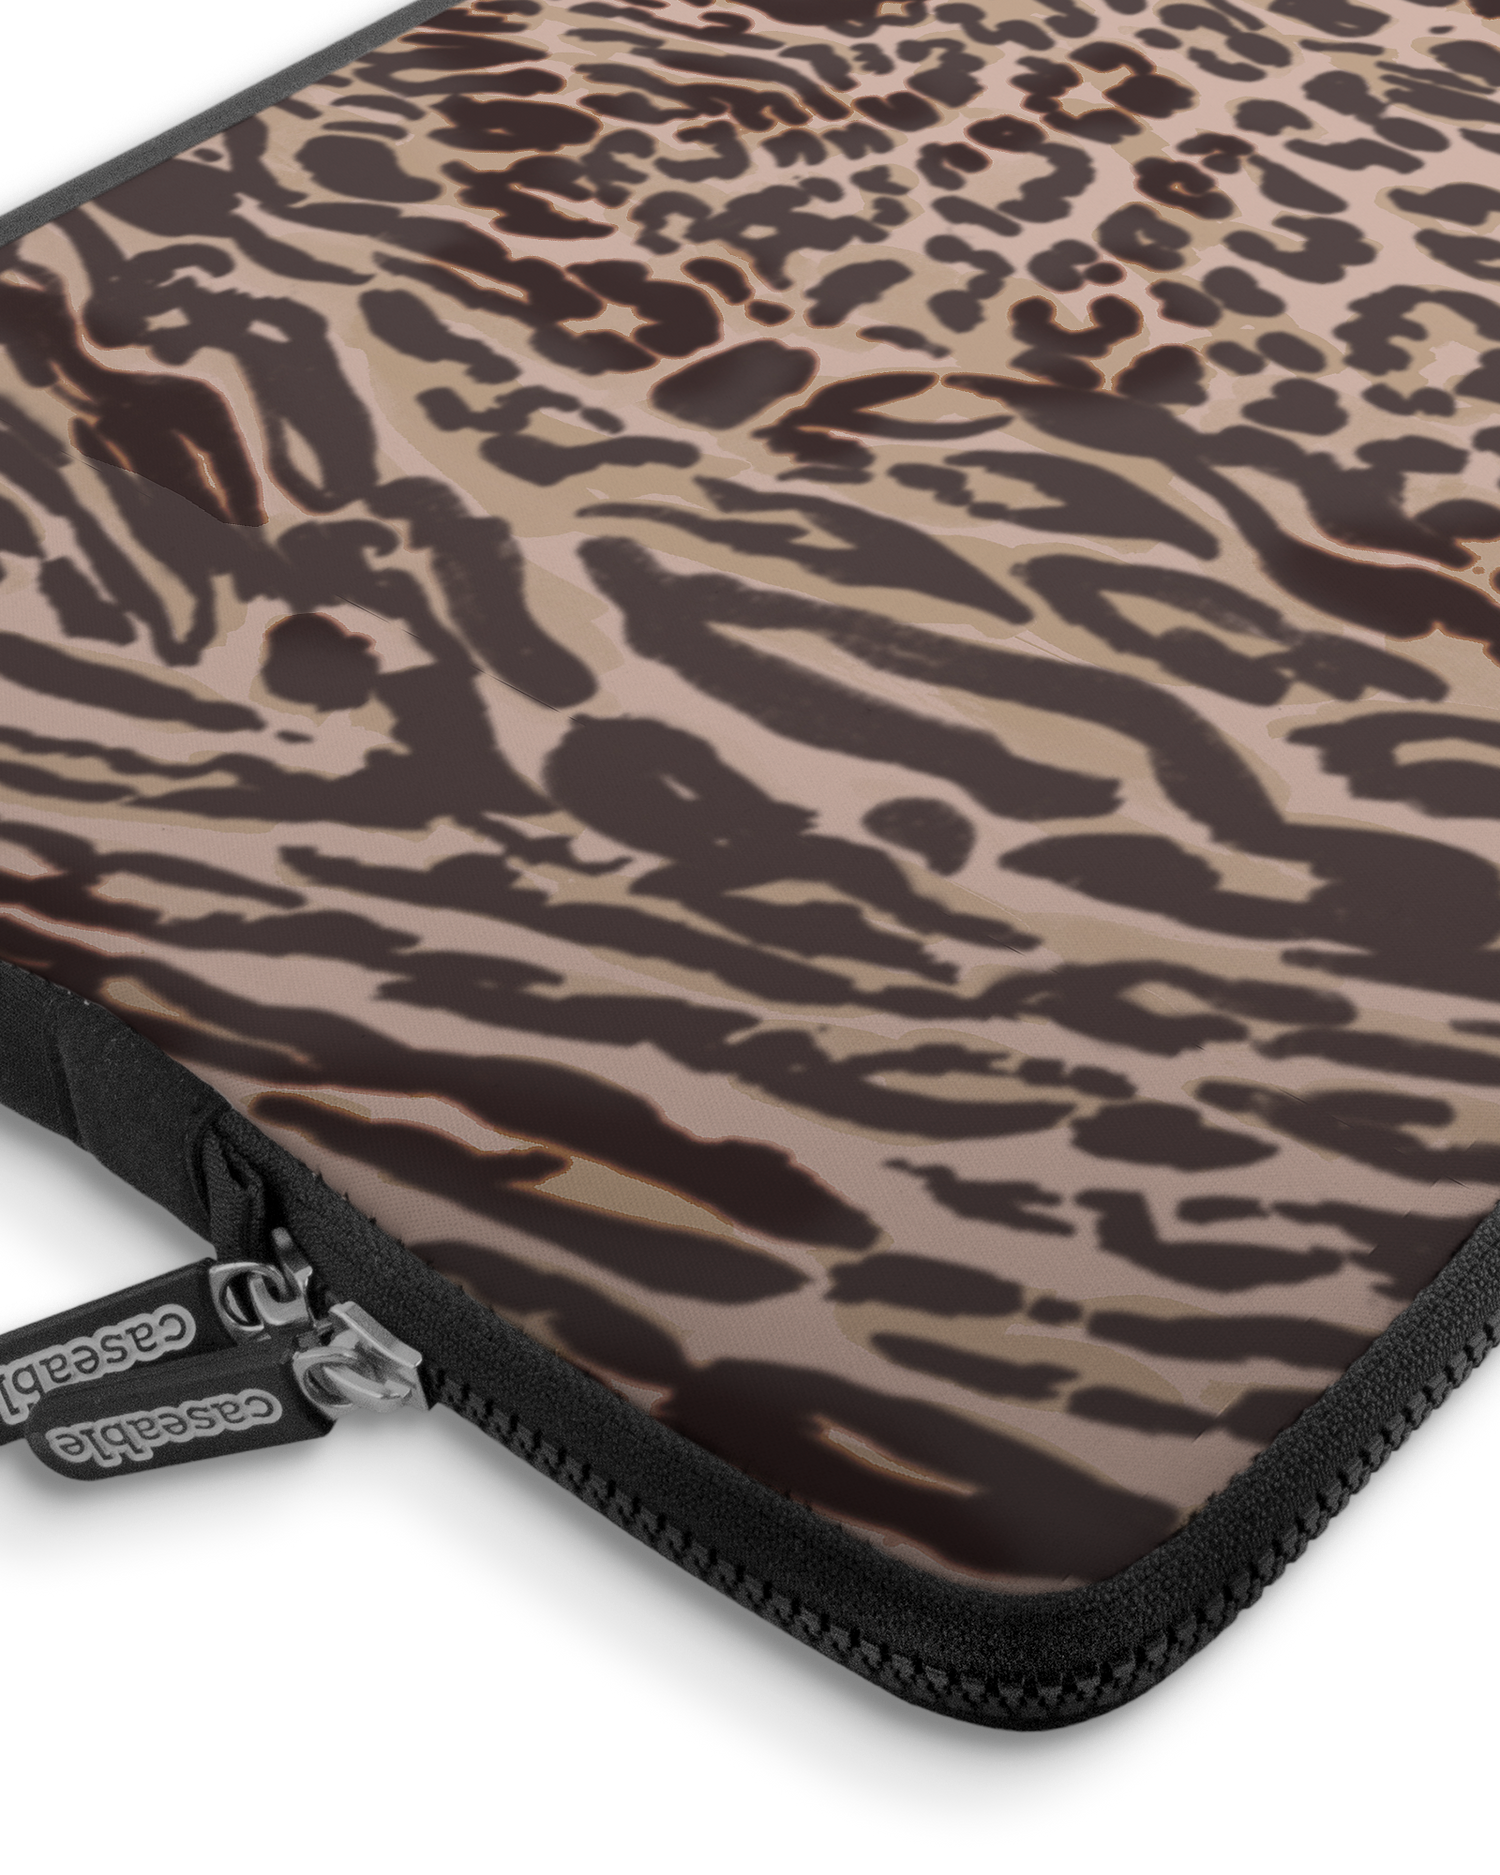 Animal Skin Tough Love Premium Laptoptasche 17 Zoll mit Gerät im Inneren